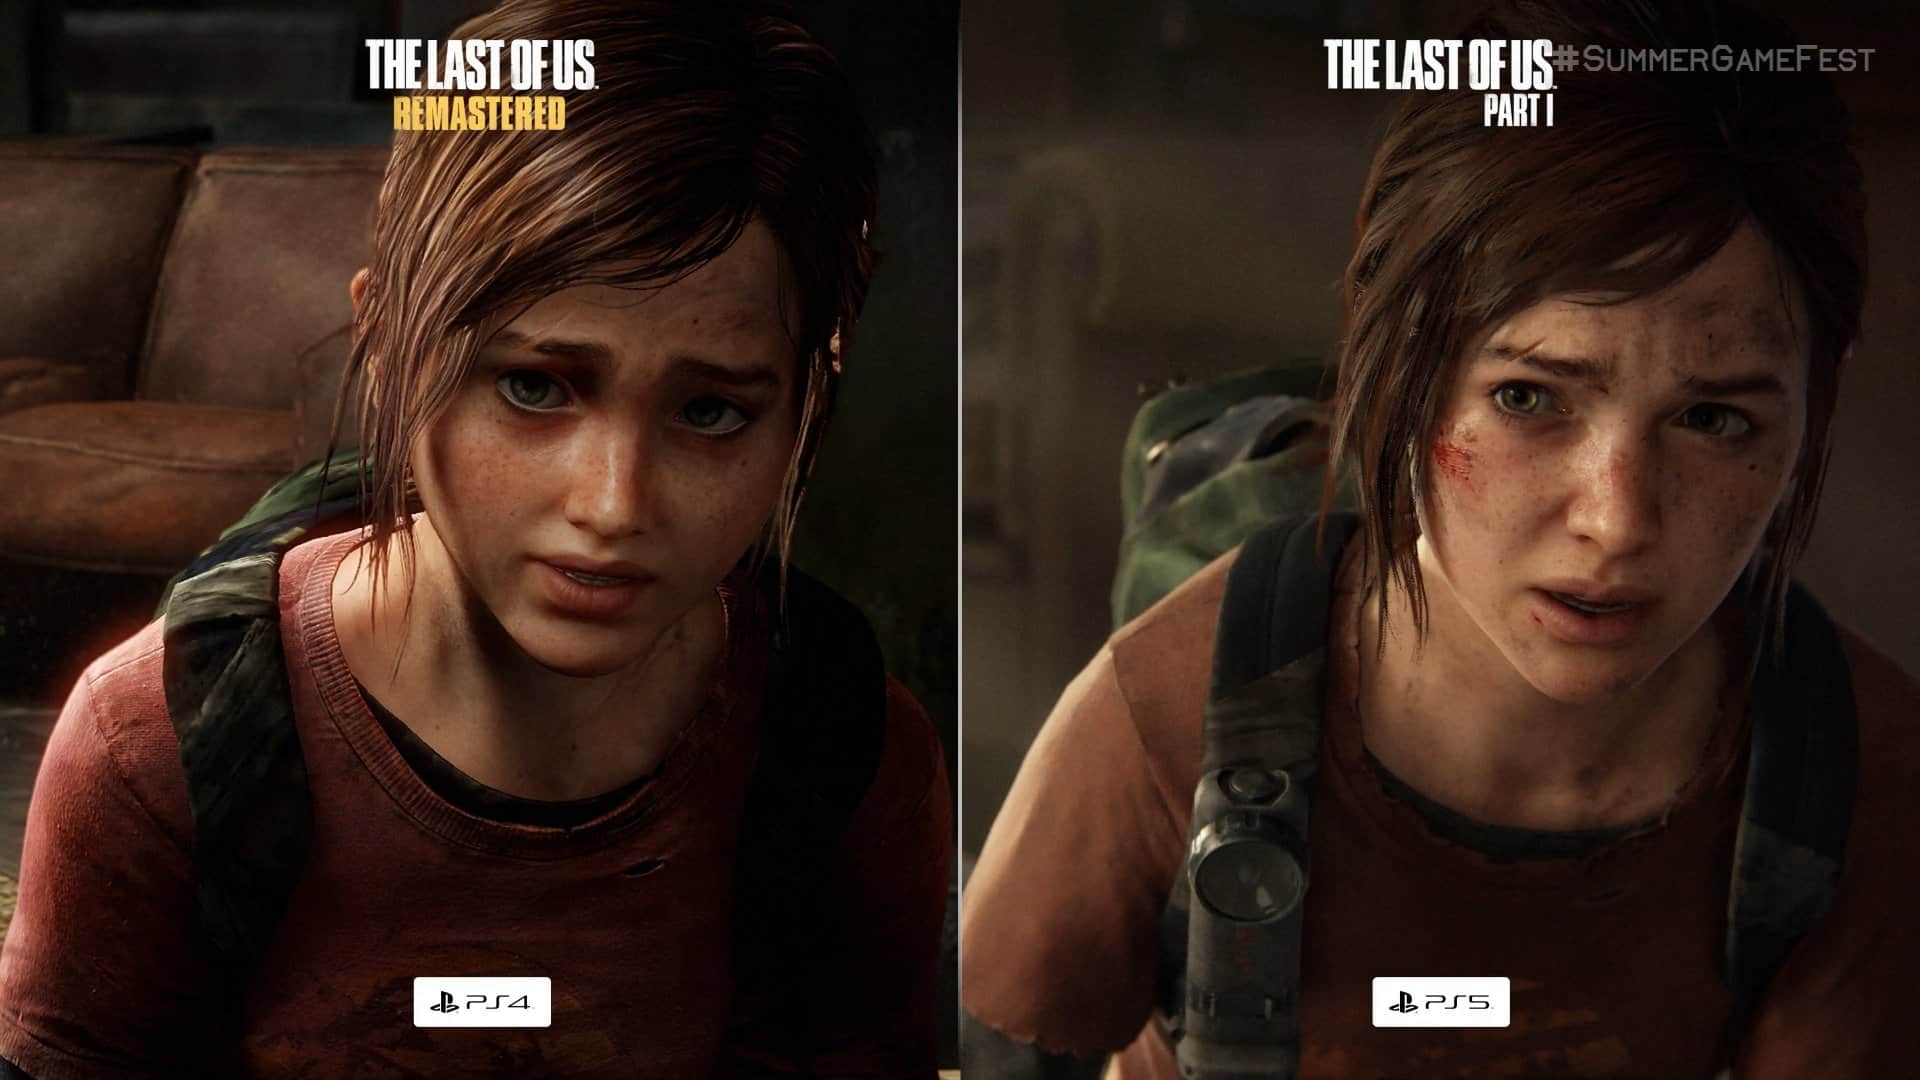 The Last of Us Parte I: un remake interessante, ha senso? - Speciale